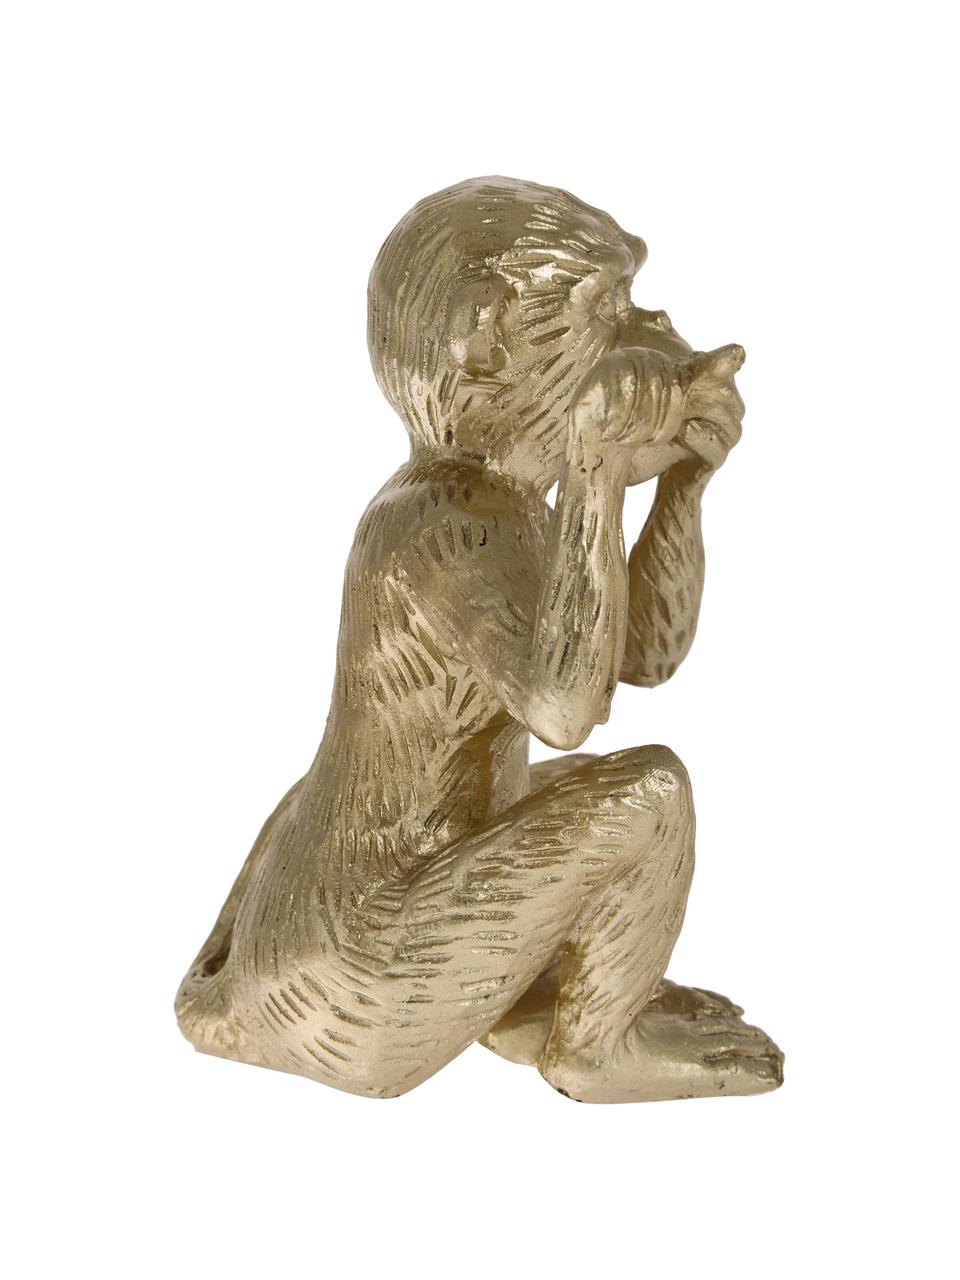 Objet décoratif Monkey, Polyrésine, Couleur dorée, larg. 14 x haut. 15 cm